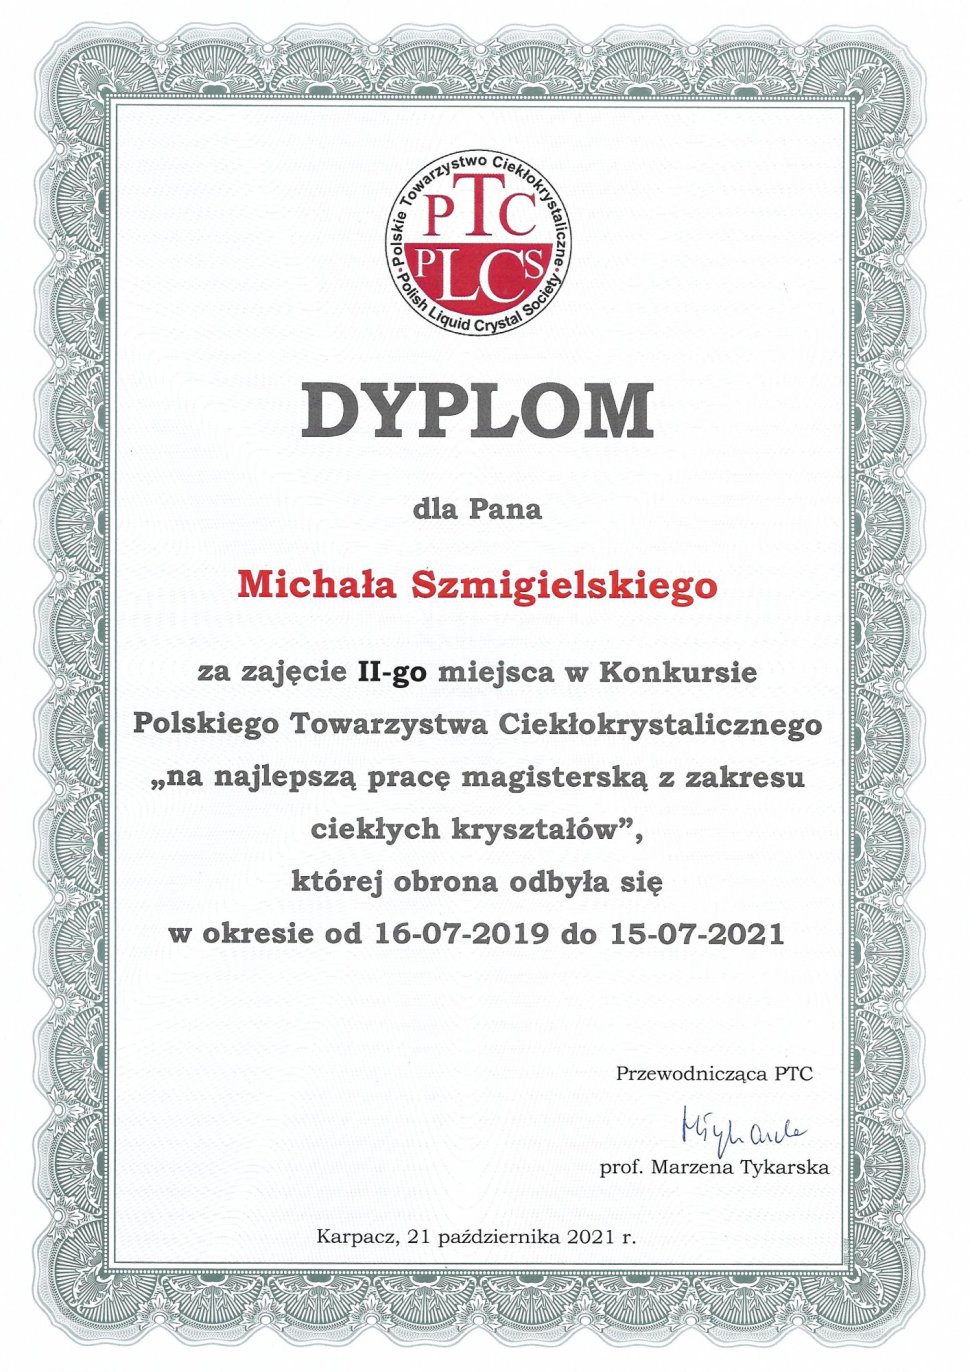 Dyplom dla Pana Michała Szmigielskiego